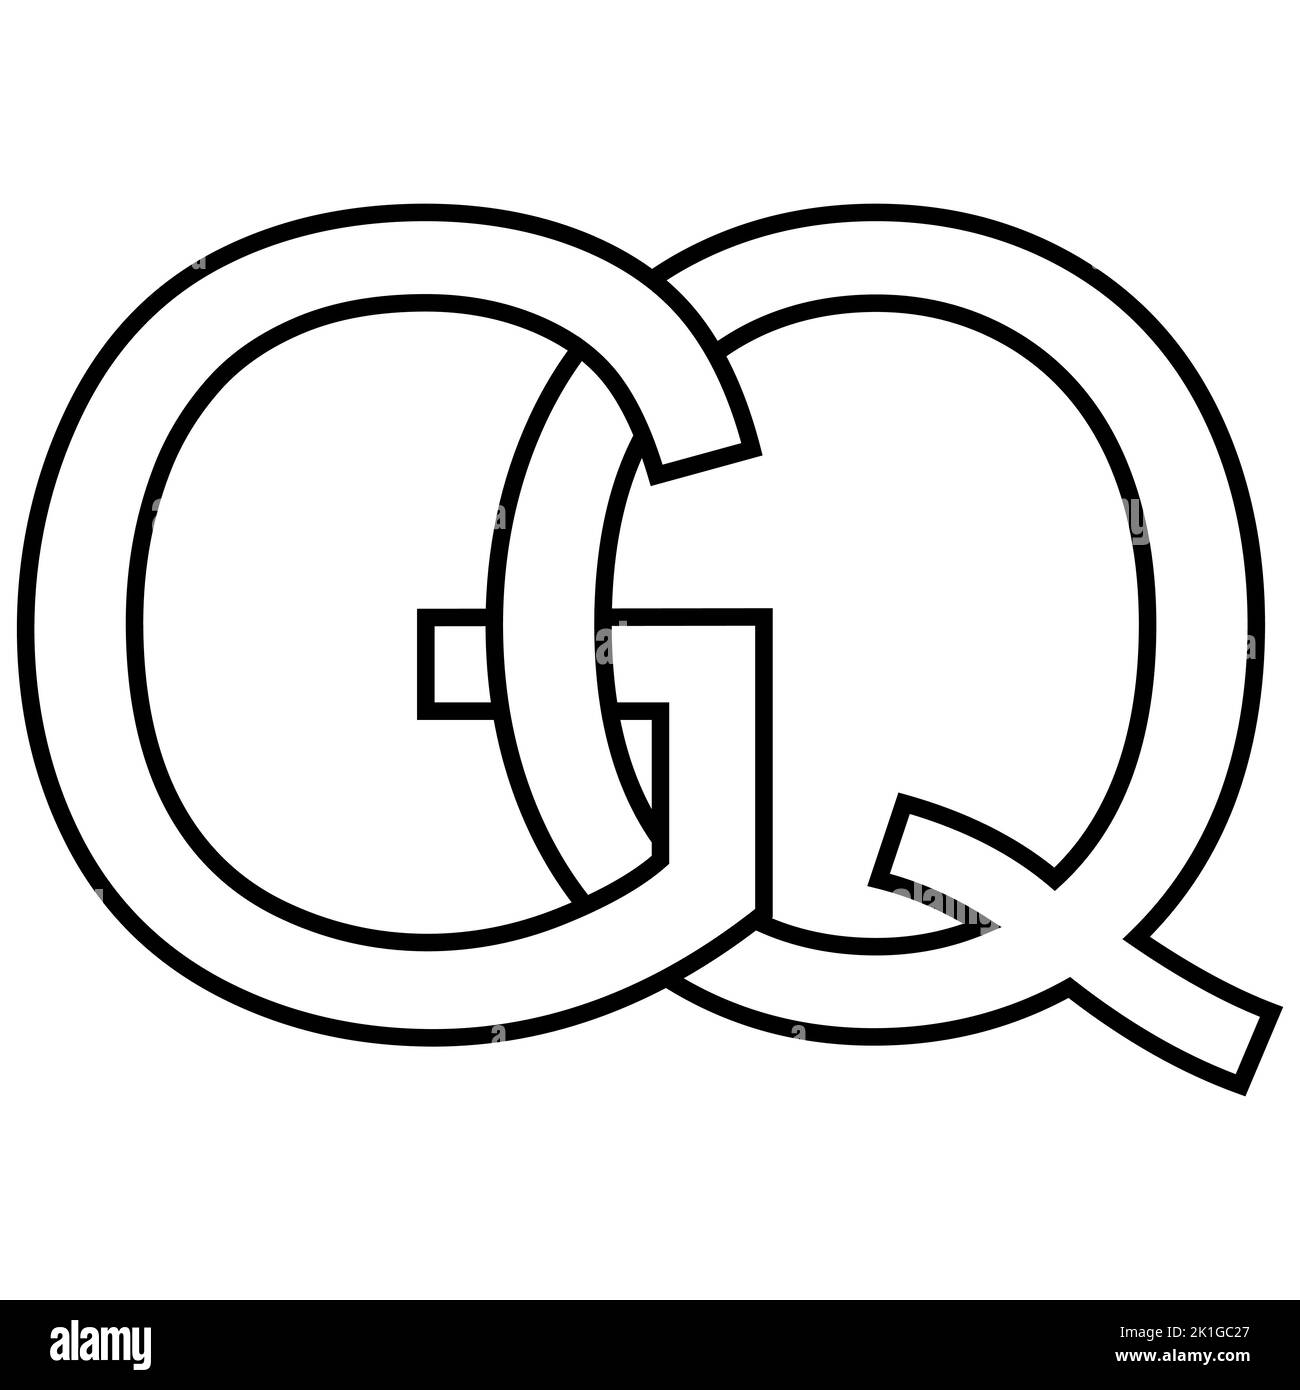 Logo sign gq qg Icon nft lettere interlacciate g q Illustrazione Vettoriale